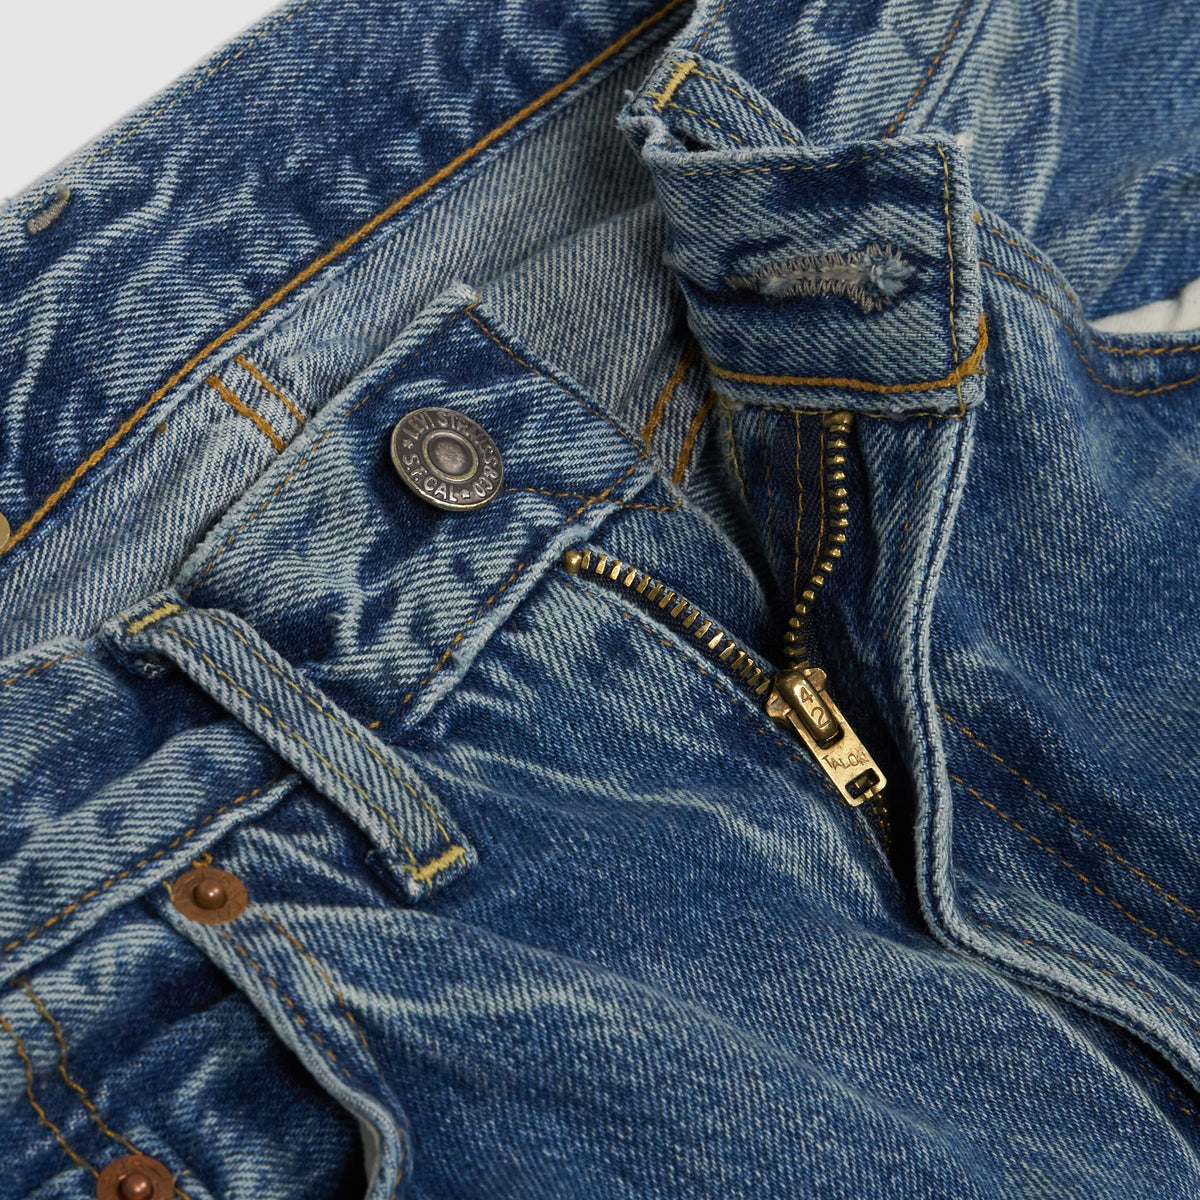 LEVI'S LVC 1954 501Z XX selvedge Jeans, $399 Levi's Vintage  Clothing 1954 501XX